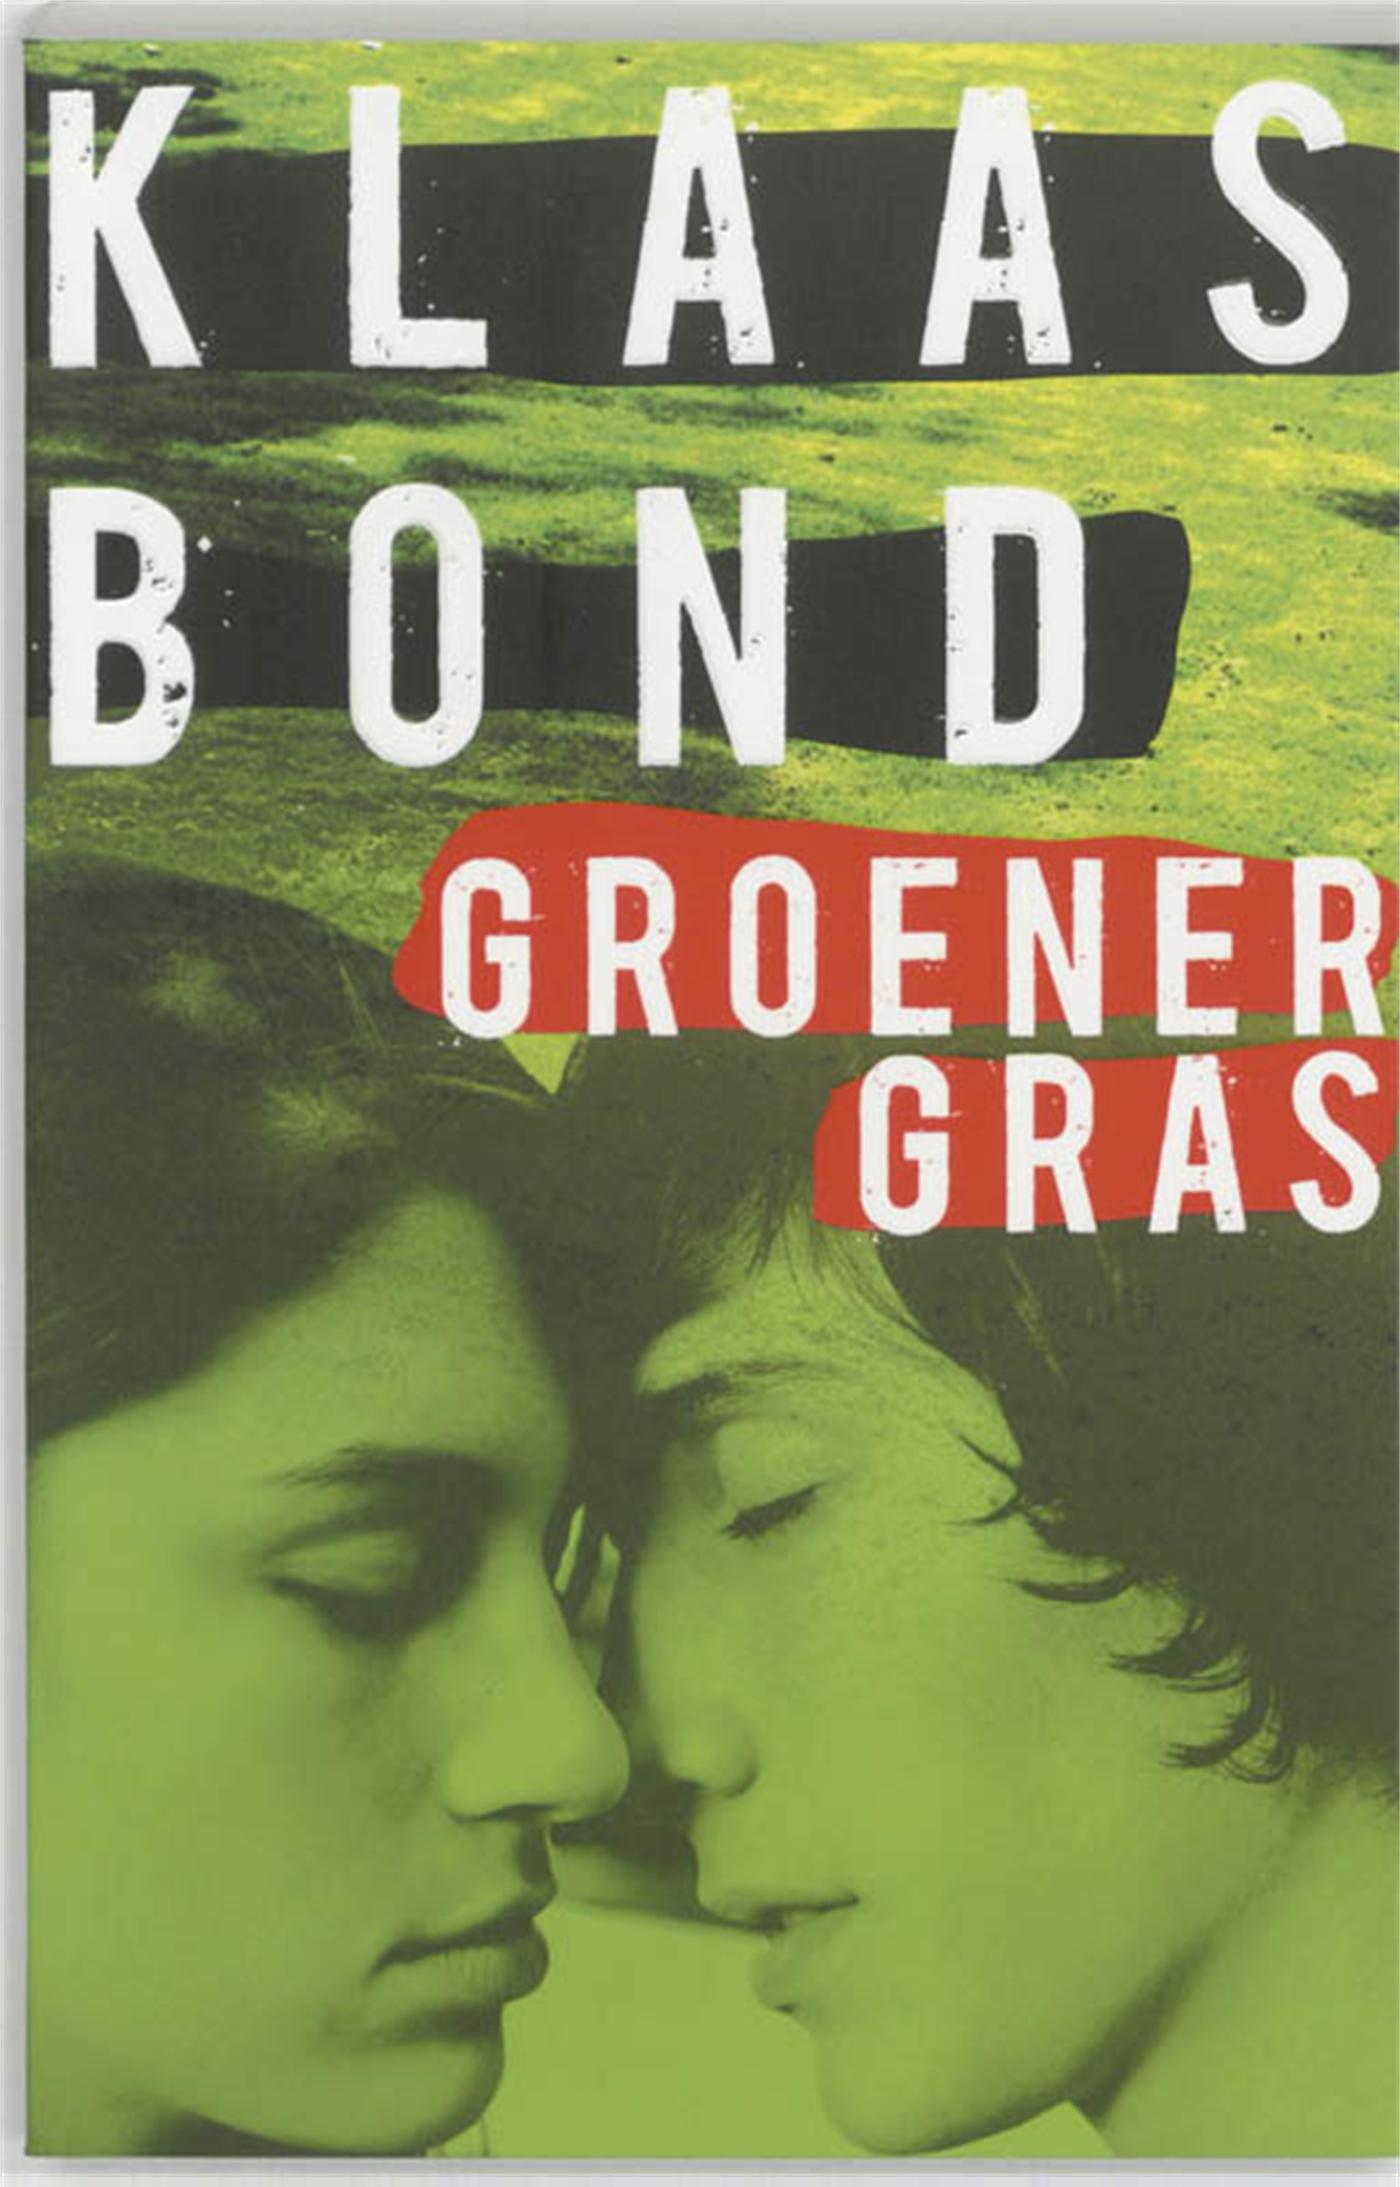 Groener gras (Ebook)